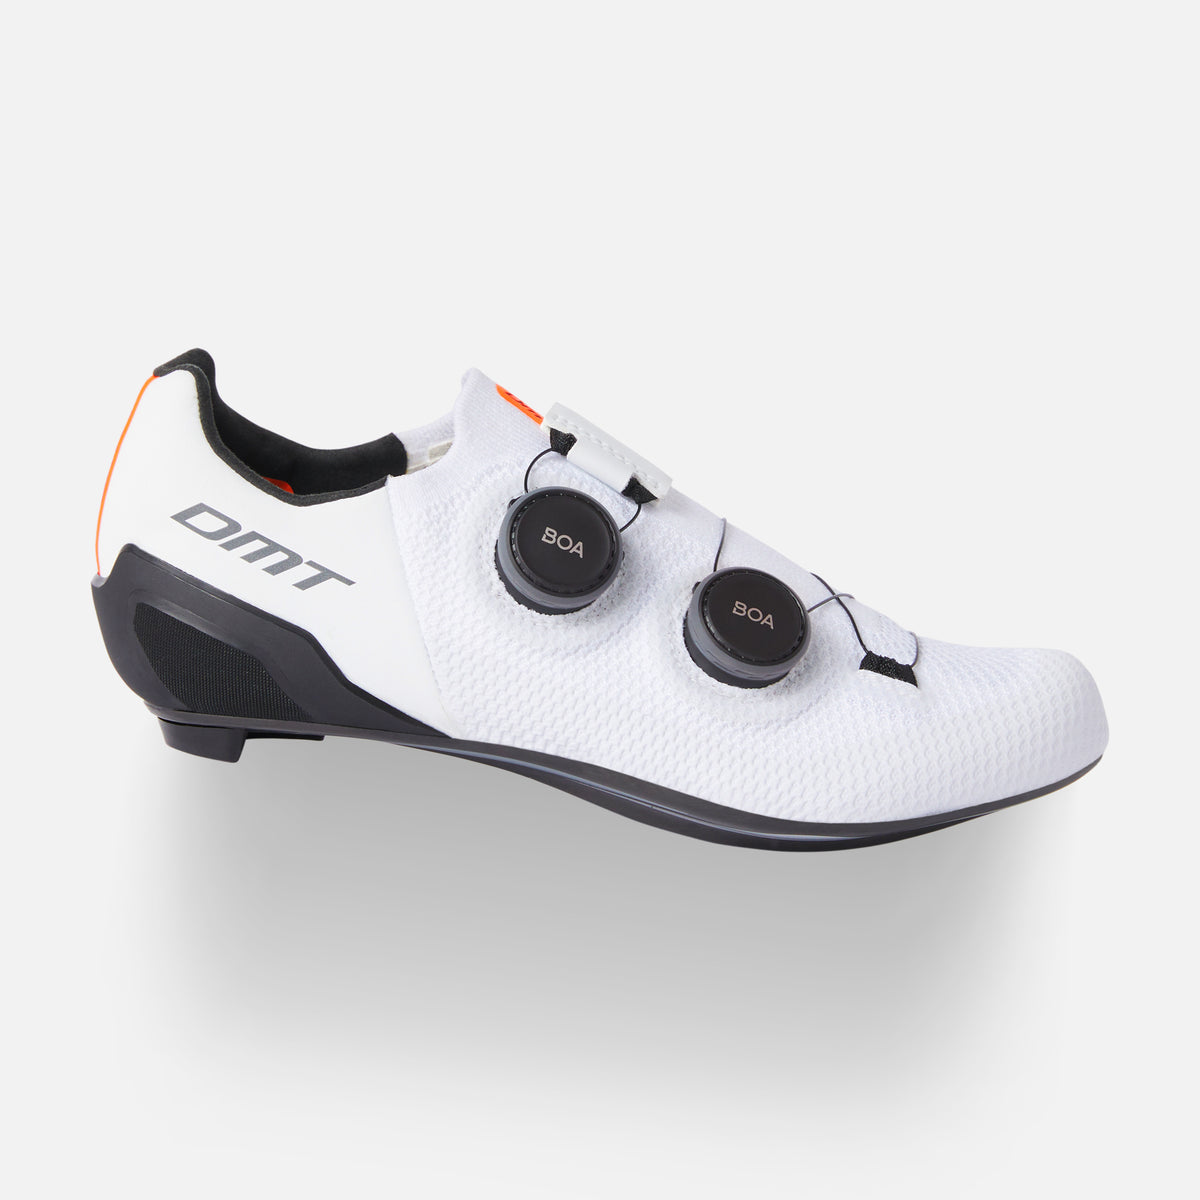 DMT Sh10 bike shoes White/Black - DMT Cycling